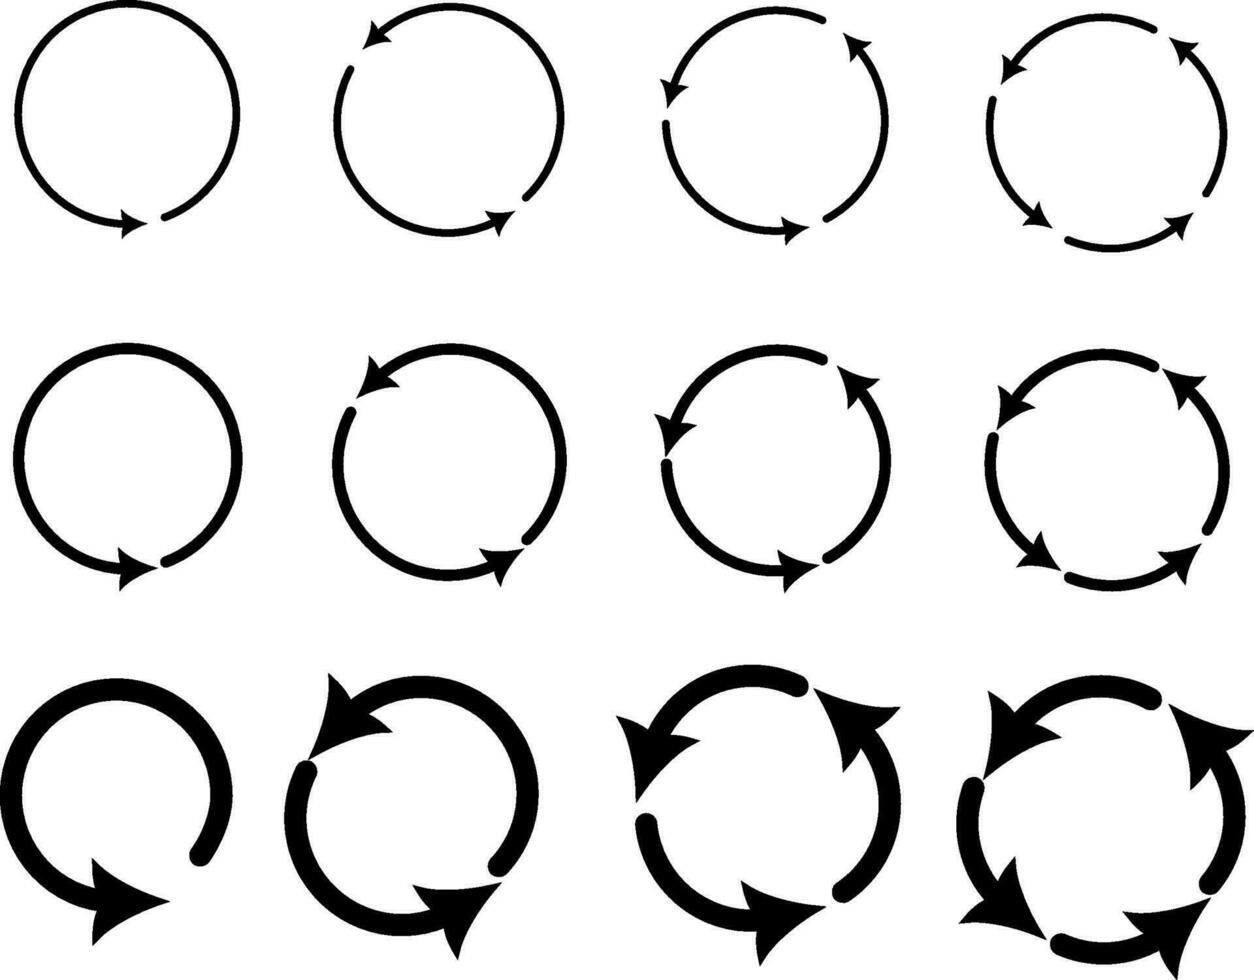 de cirkulär pilar är annorlunda svart Färg, annorlunda tjocklek. utbytbar vektor design.